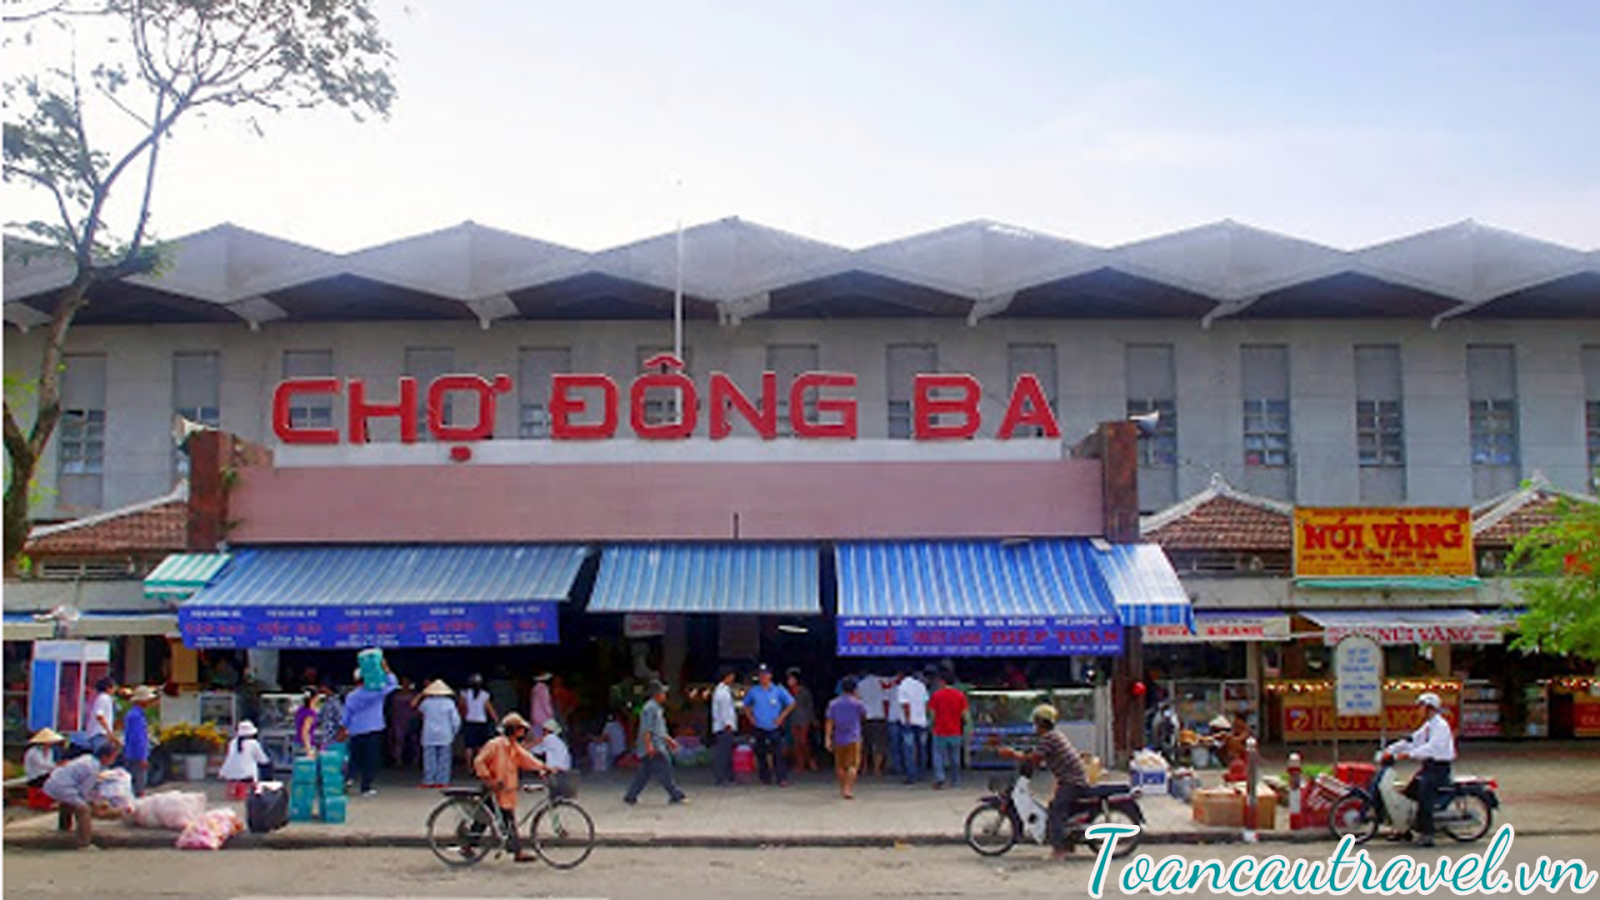 Đông Ba là một khu chợ của tiểu thương xứ Huế nhưng khá sầm uất và tấp nập người mua kẻ bán